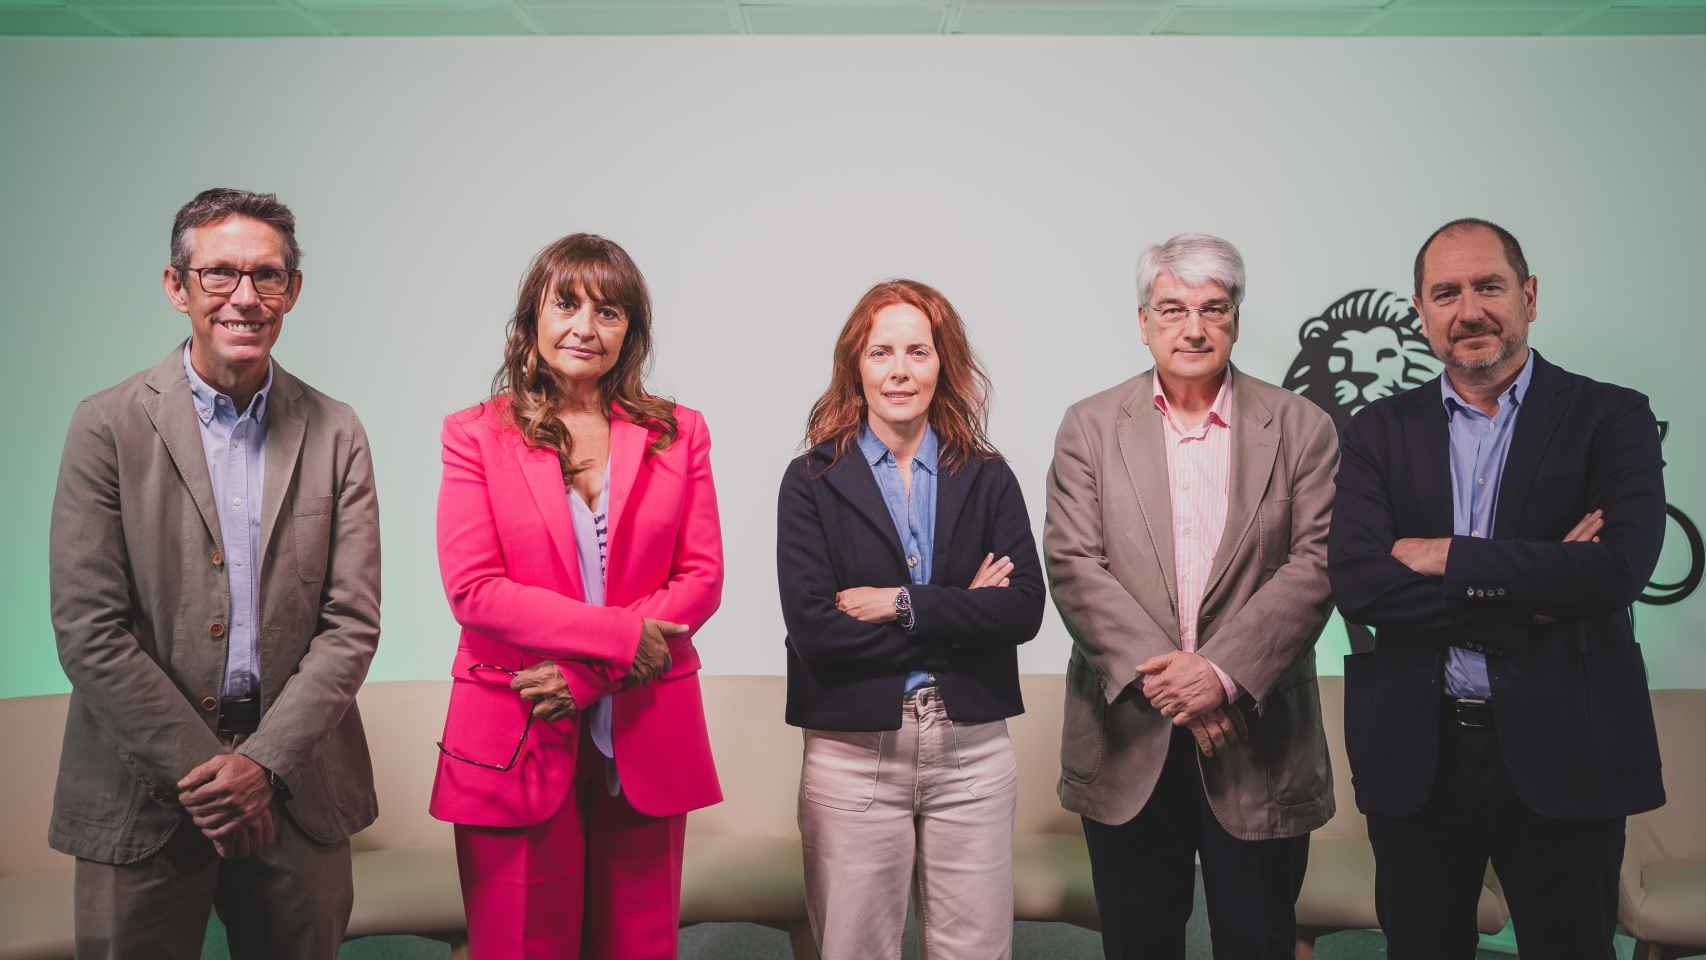 De izquierda a derecha:  Dr. Juan Rey, Dra. Maria Cruz Martín Delgado, Aroa Vivanco, Dr. Miguel Cuchí y Dr. Juan Carlos Yébenes